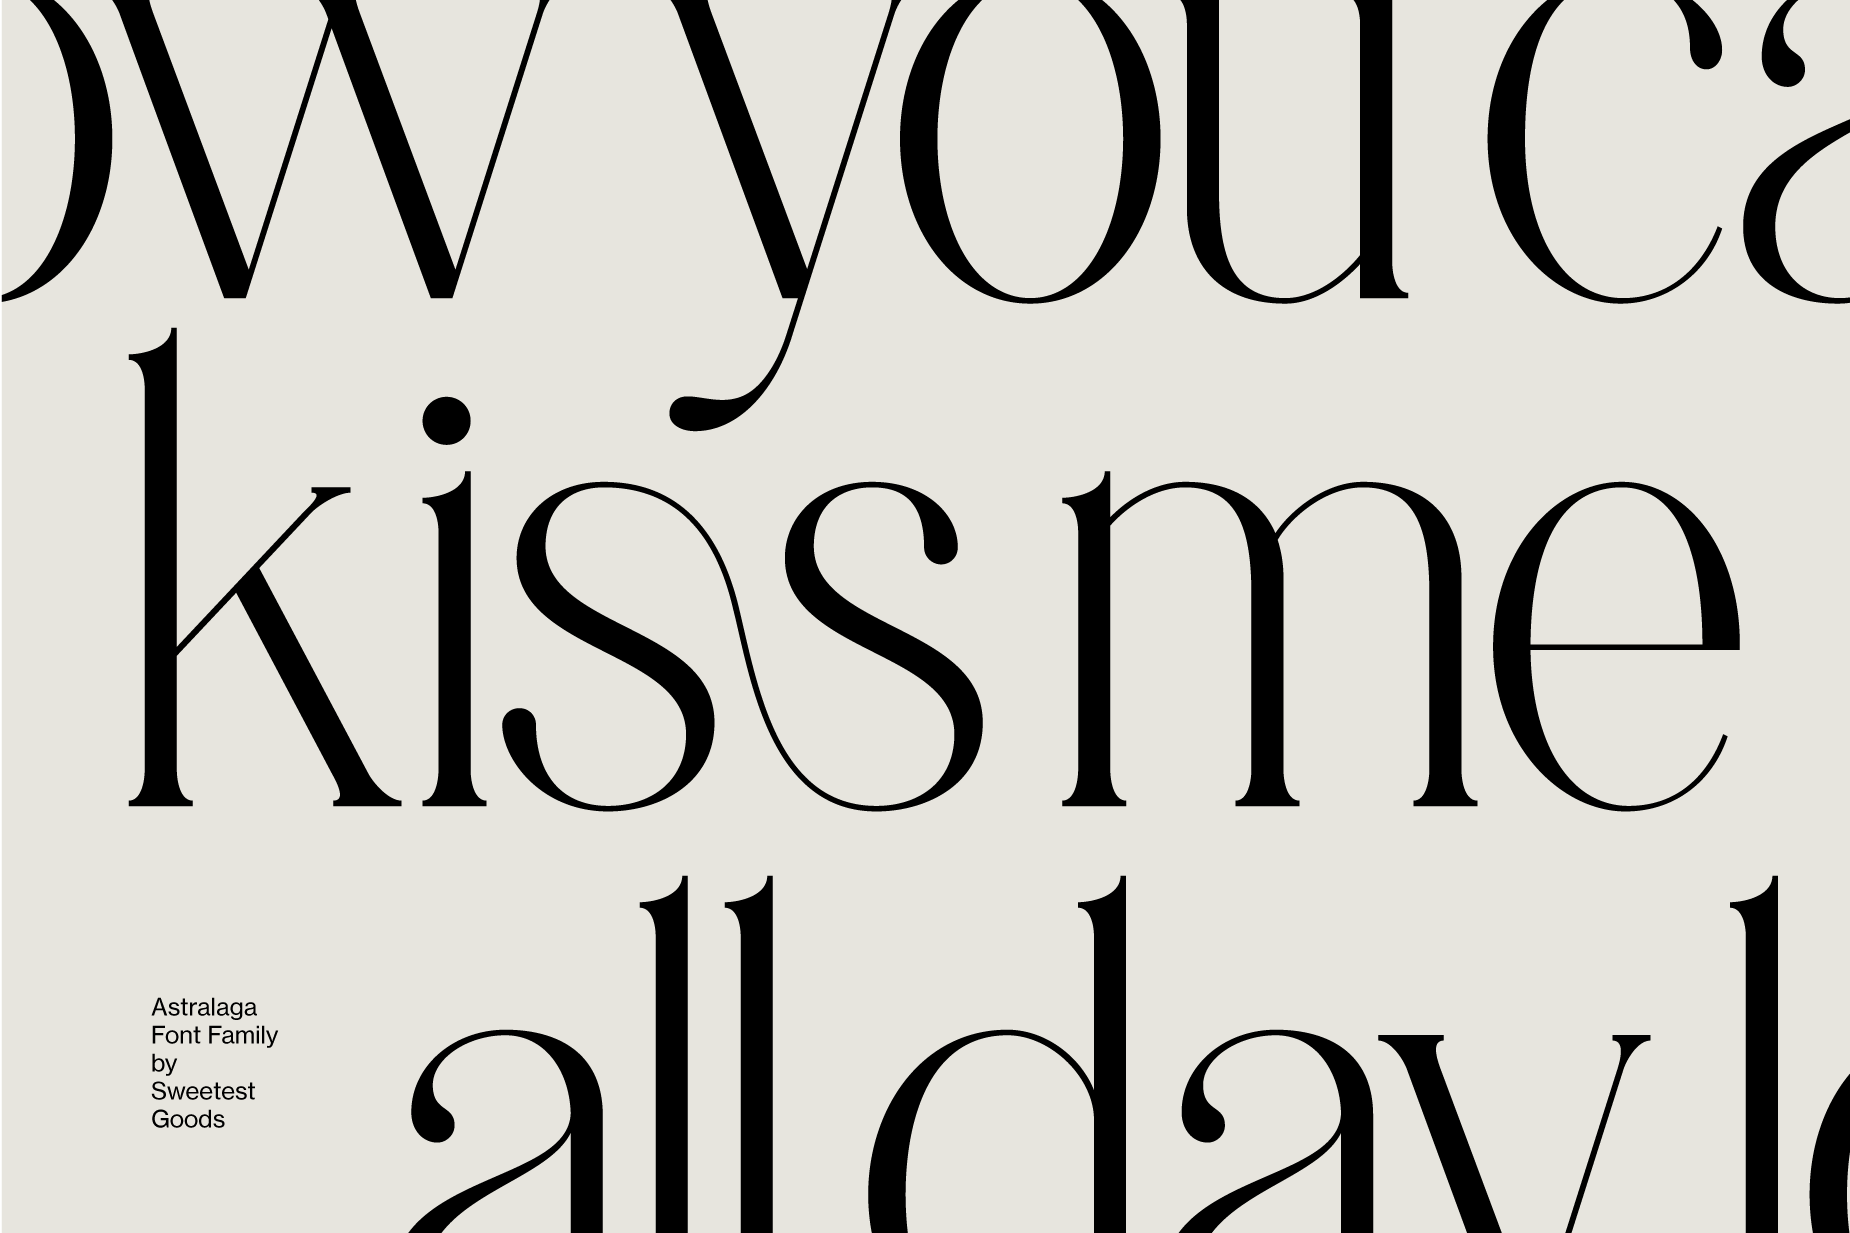 Astralaga Typeface Design - Graphic Design